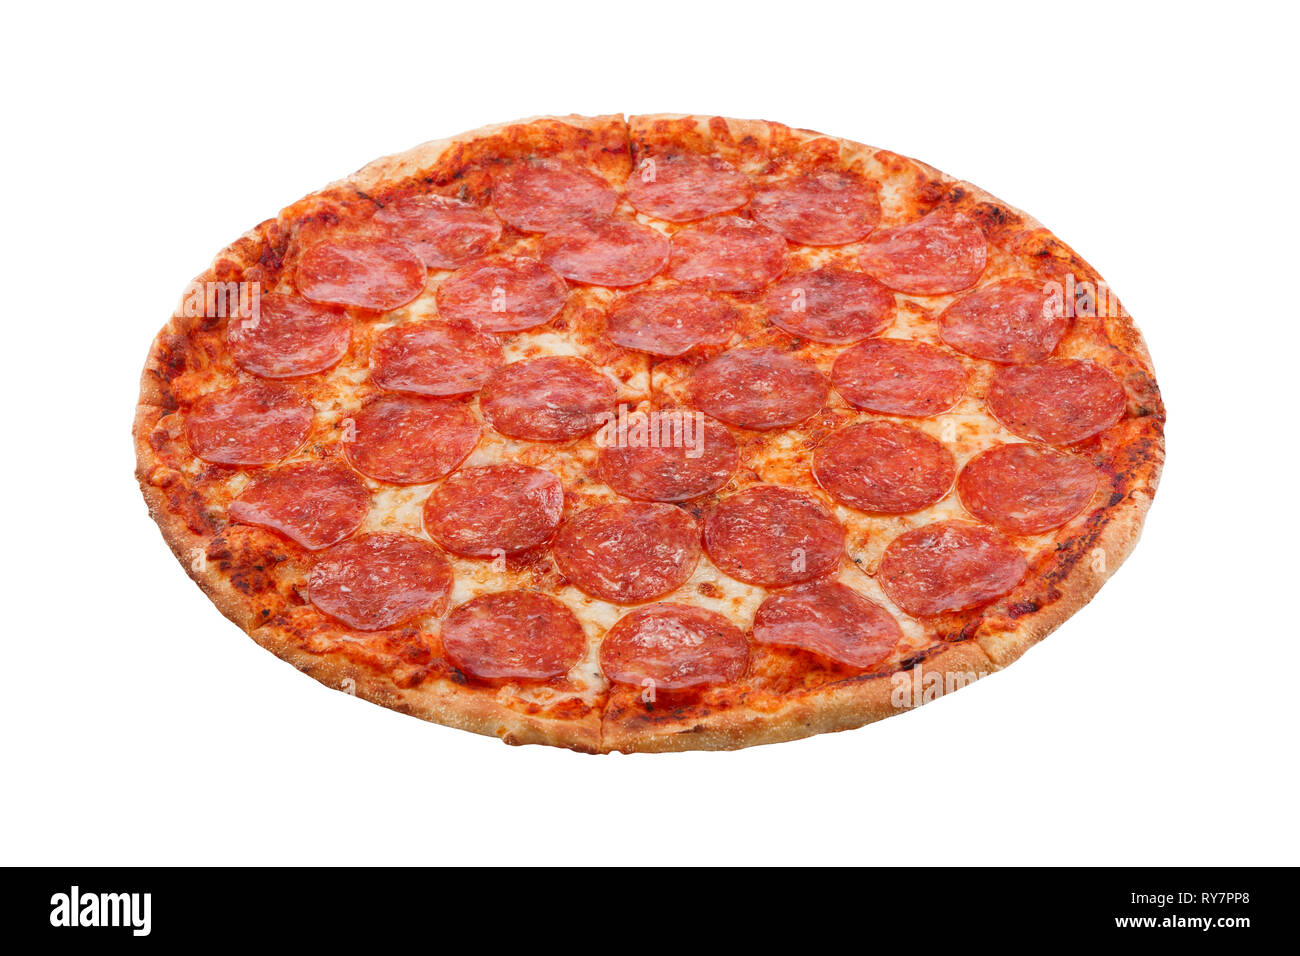 цена на пиццу пепперони фото 70